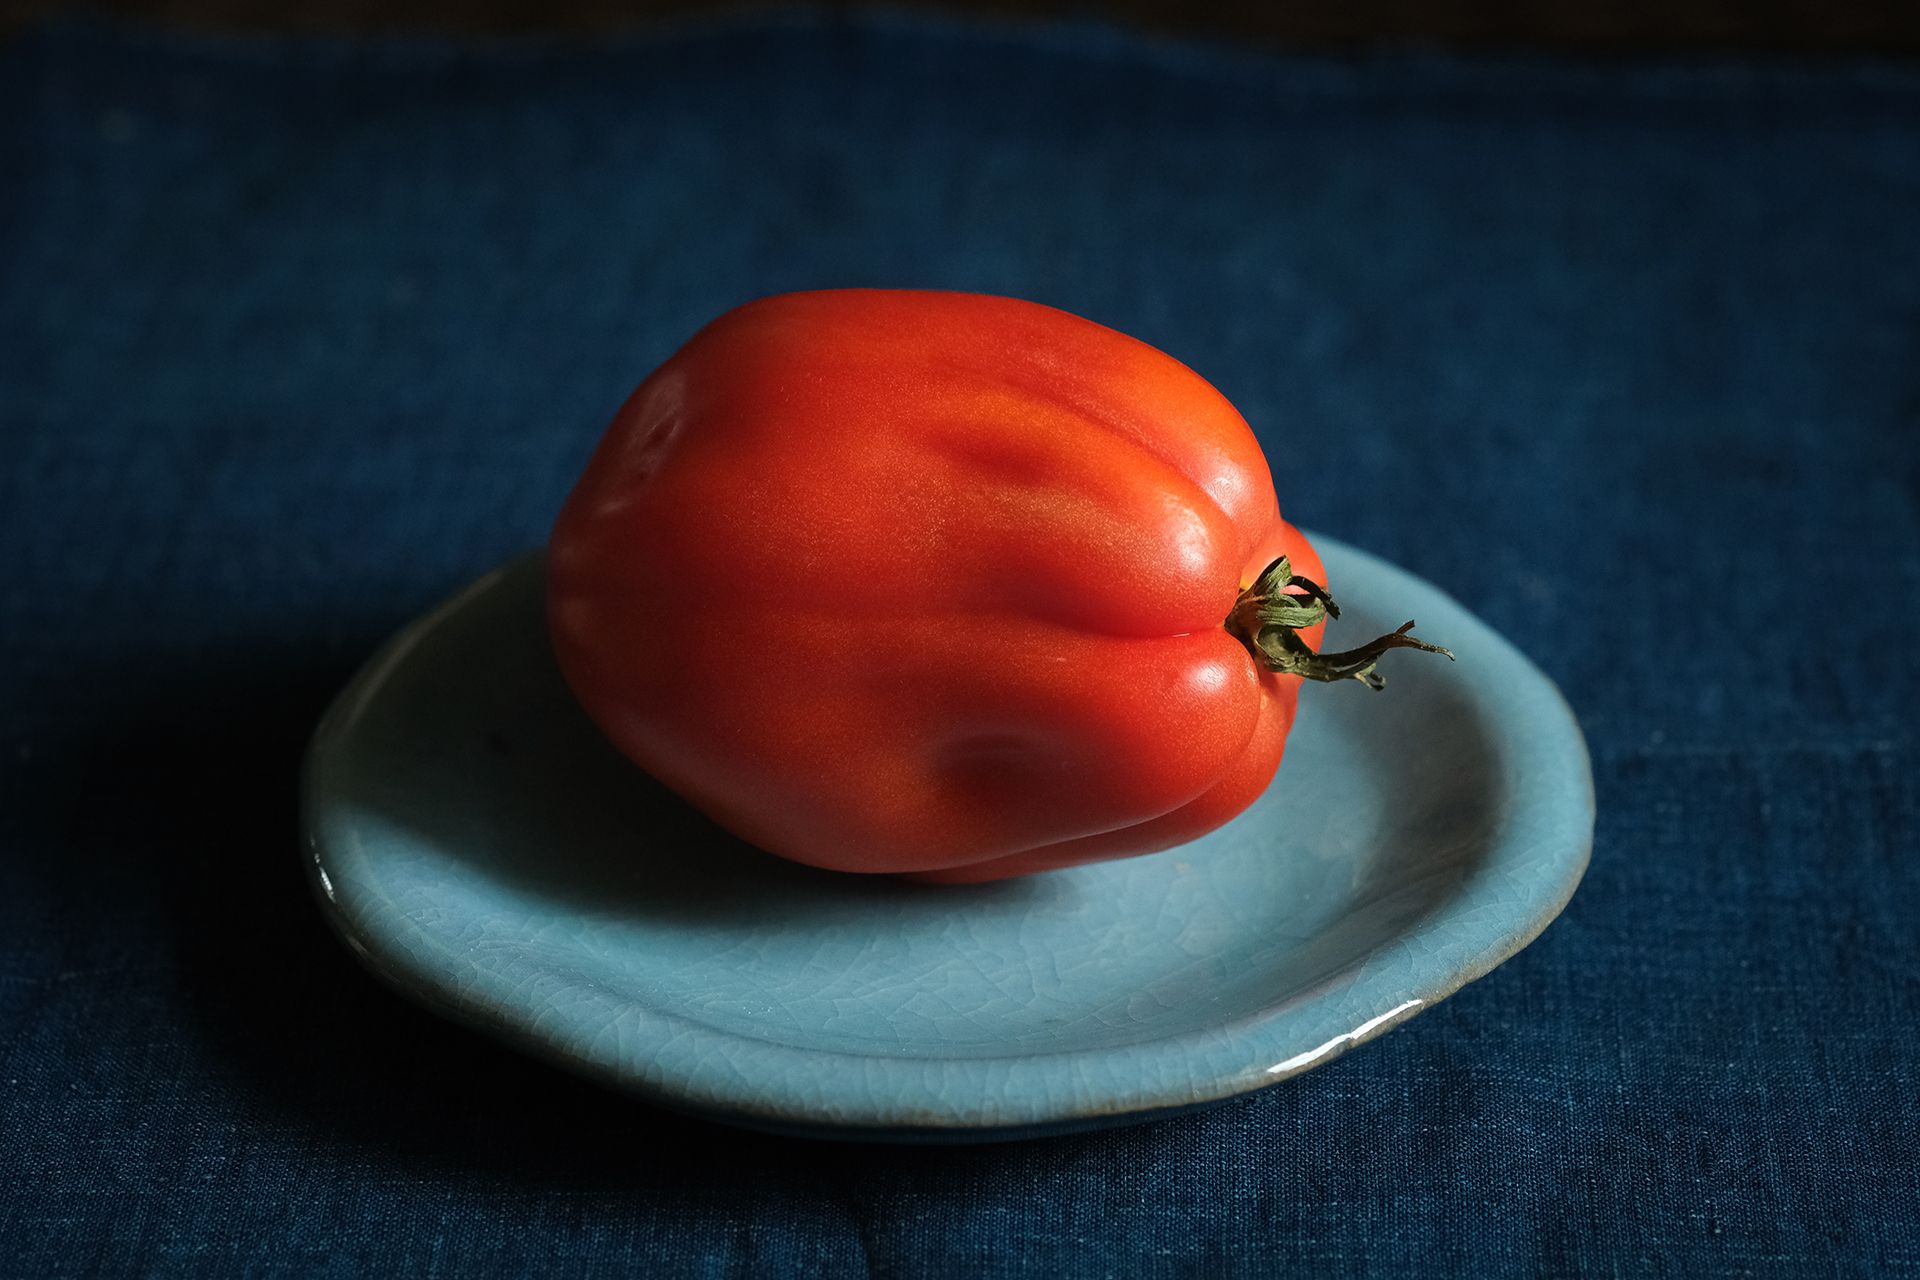 Tomatoes on Japanese ceramic plates taste better